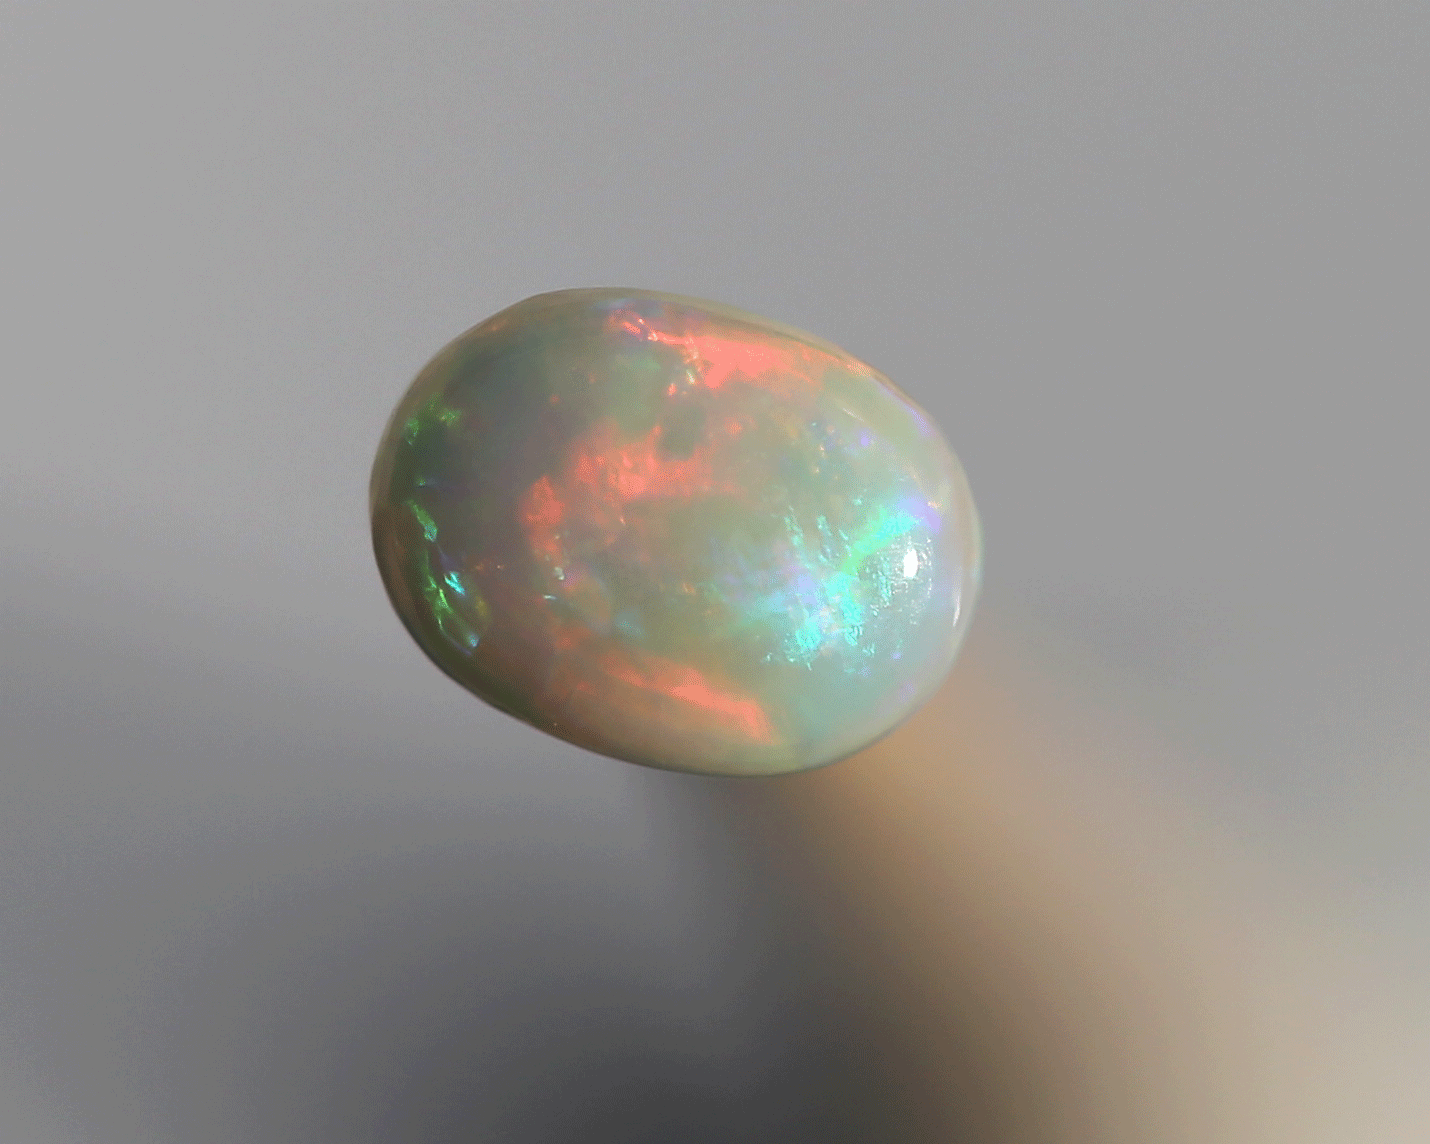 0.48 ct white opal